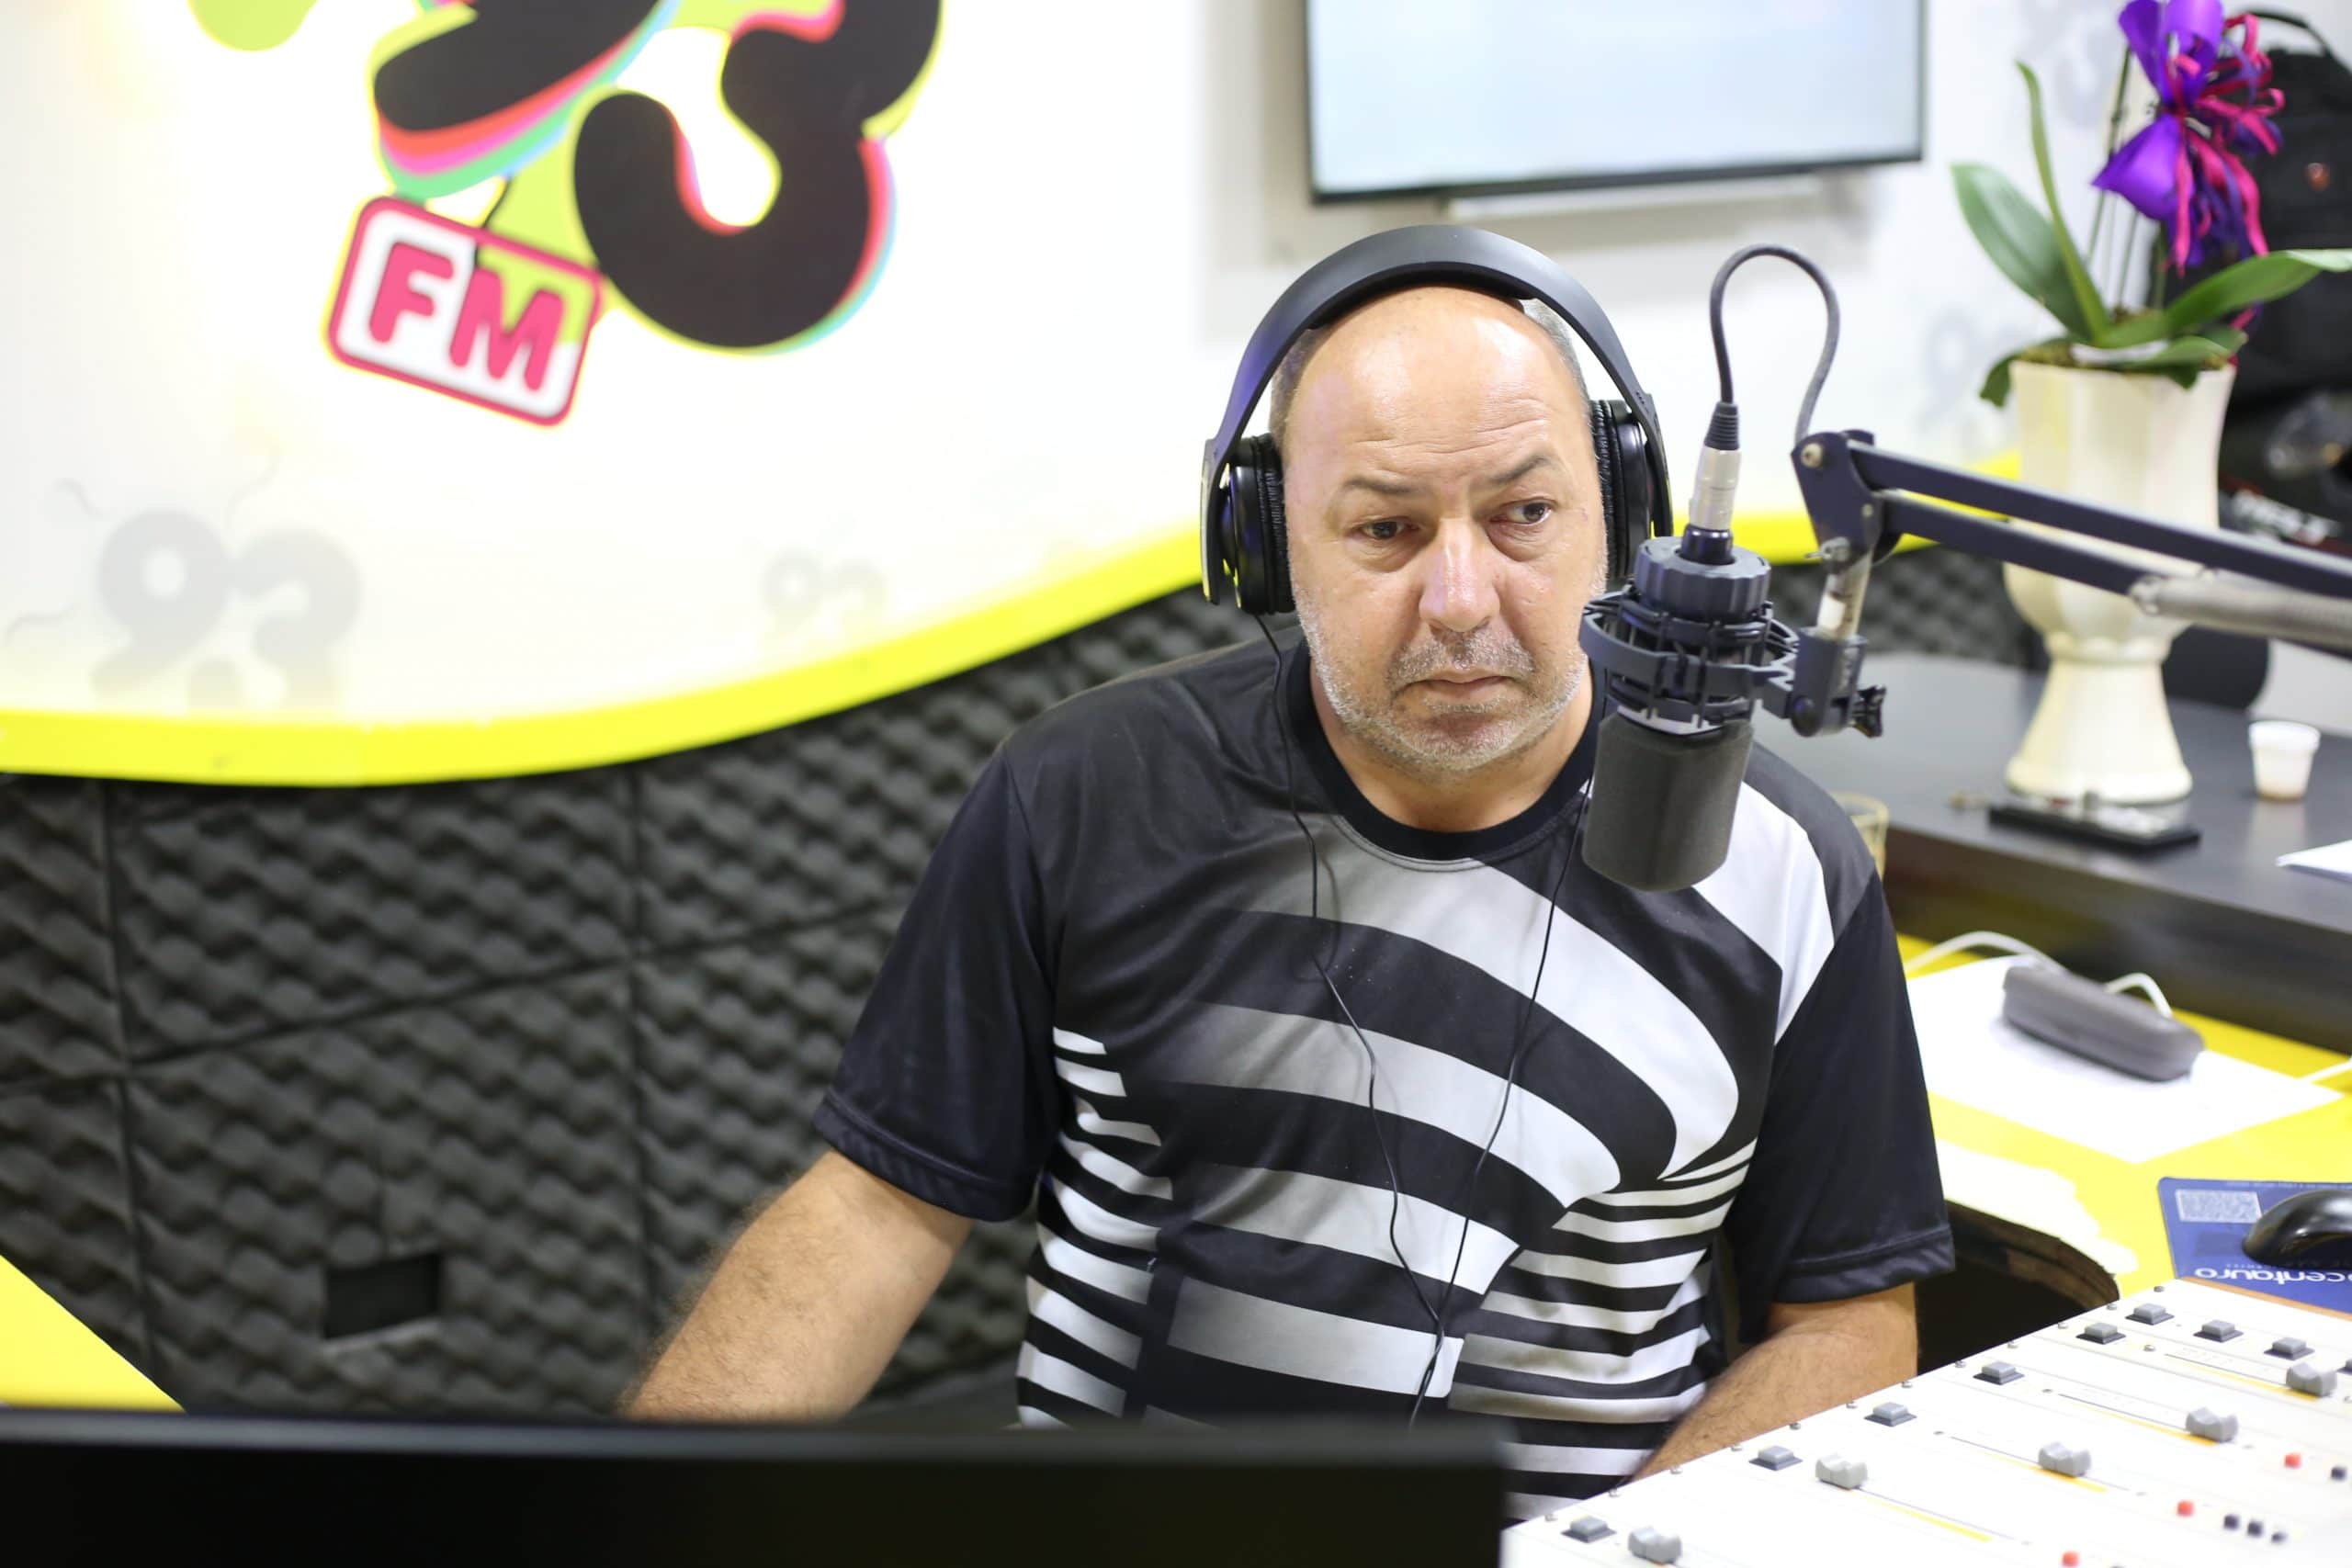 93FM amplia seus canais e se transforma em Portal 93 10